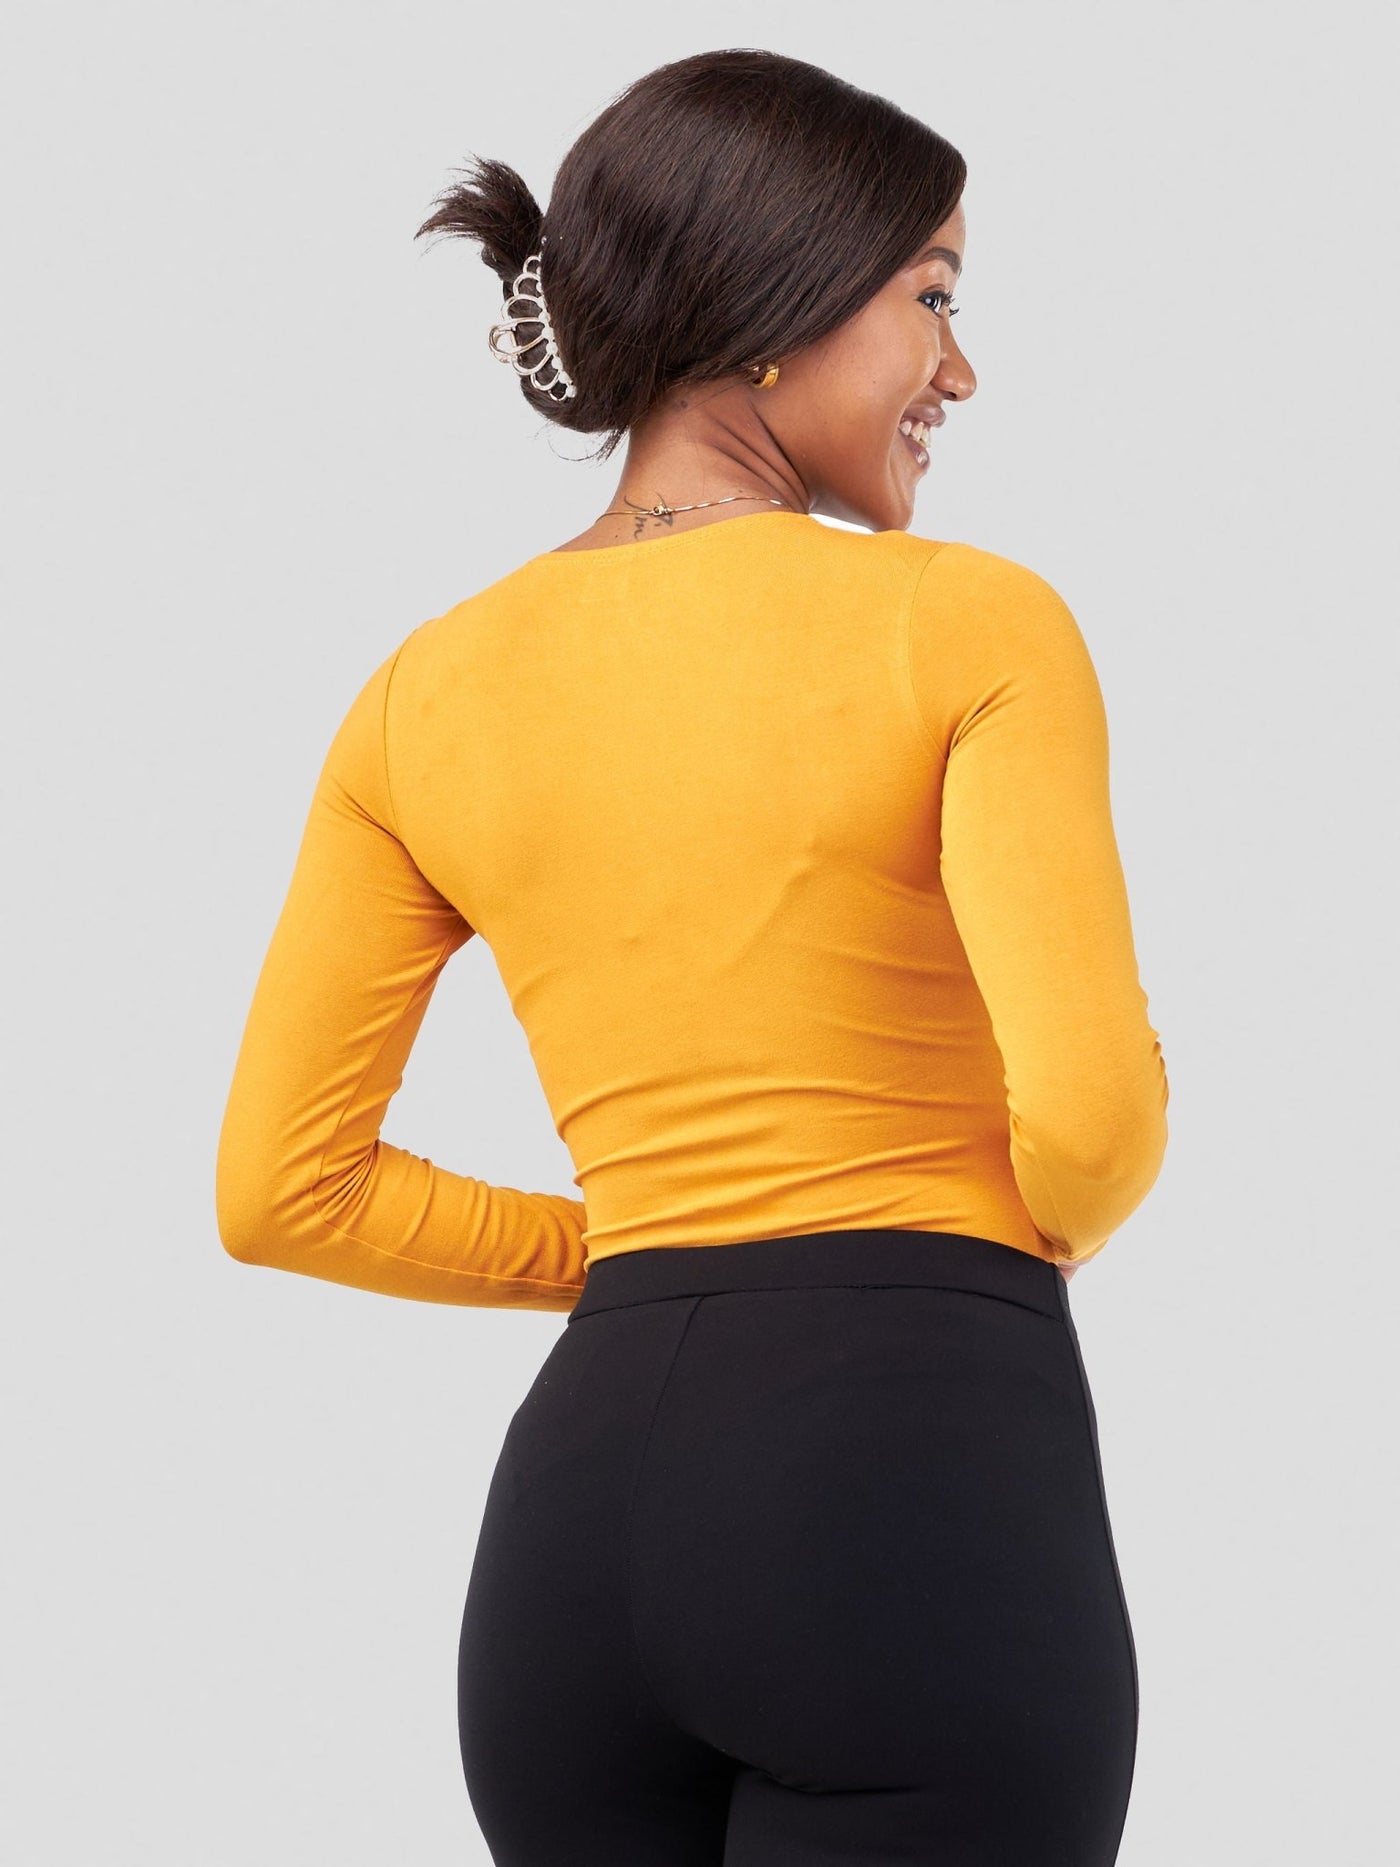 Vivo Basic Double Layered Long Sleeved Bodysuit - Mustard - Shopzetu